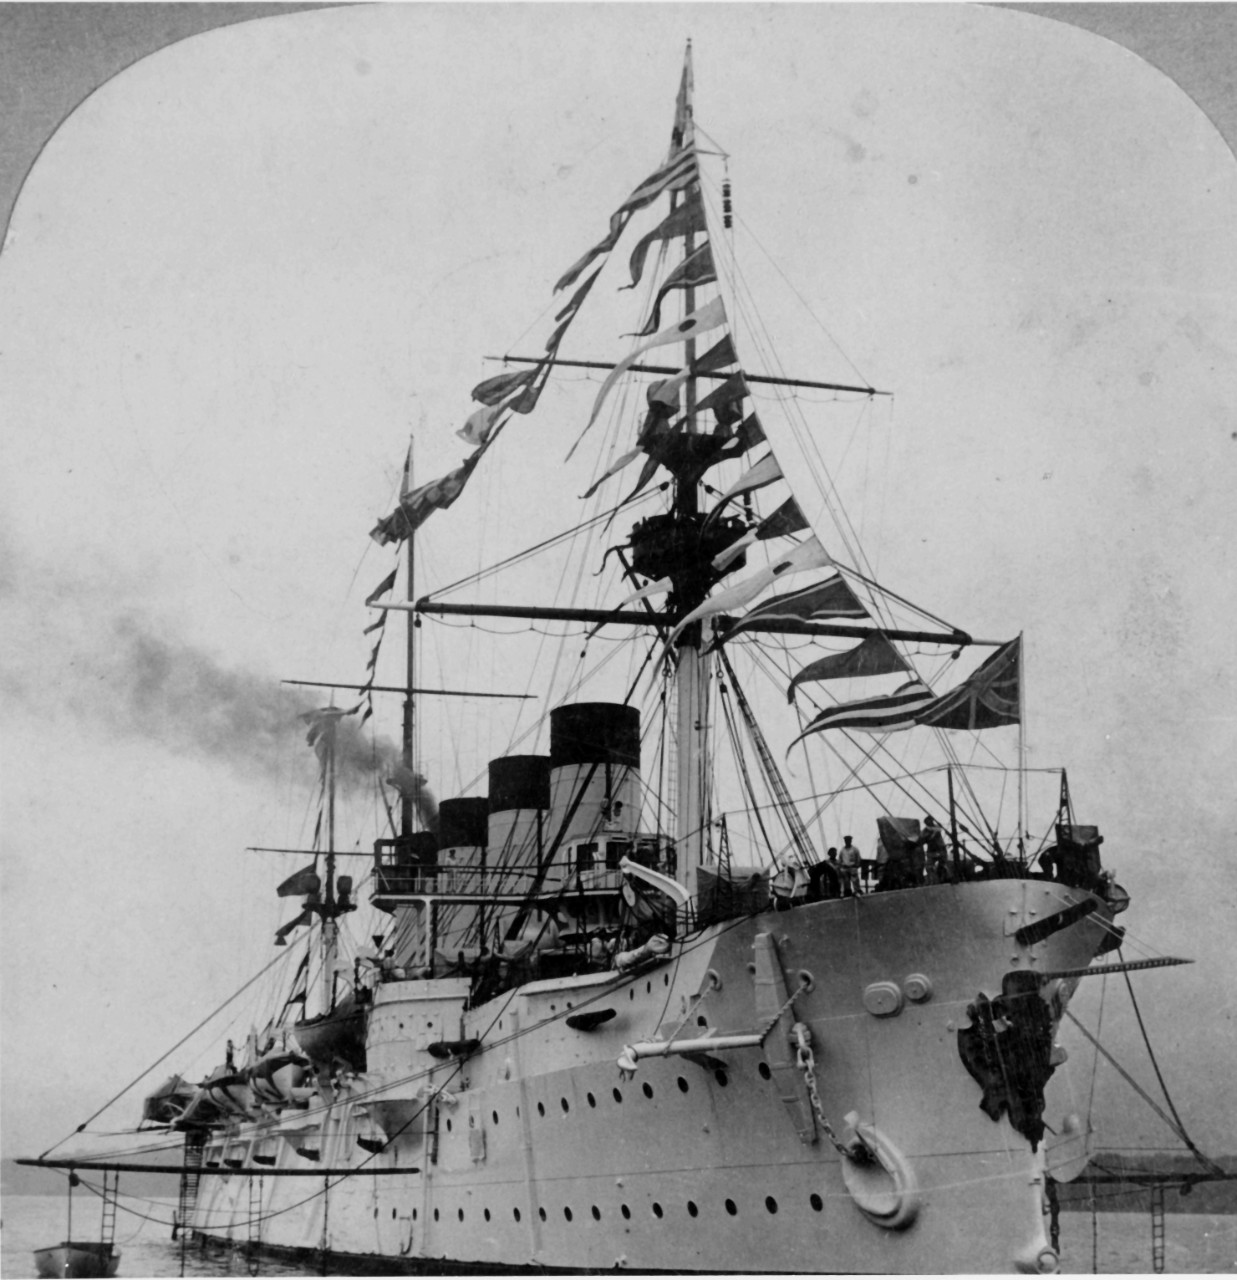 ROSSIA (Russian Cruiser, 1896)